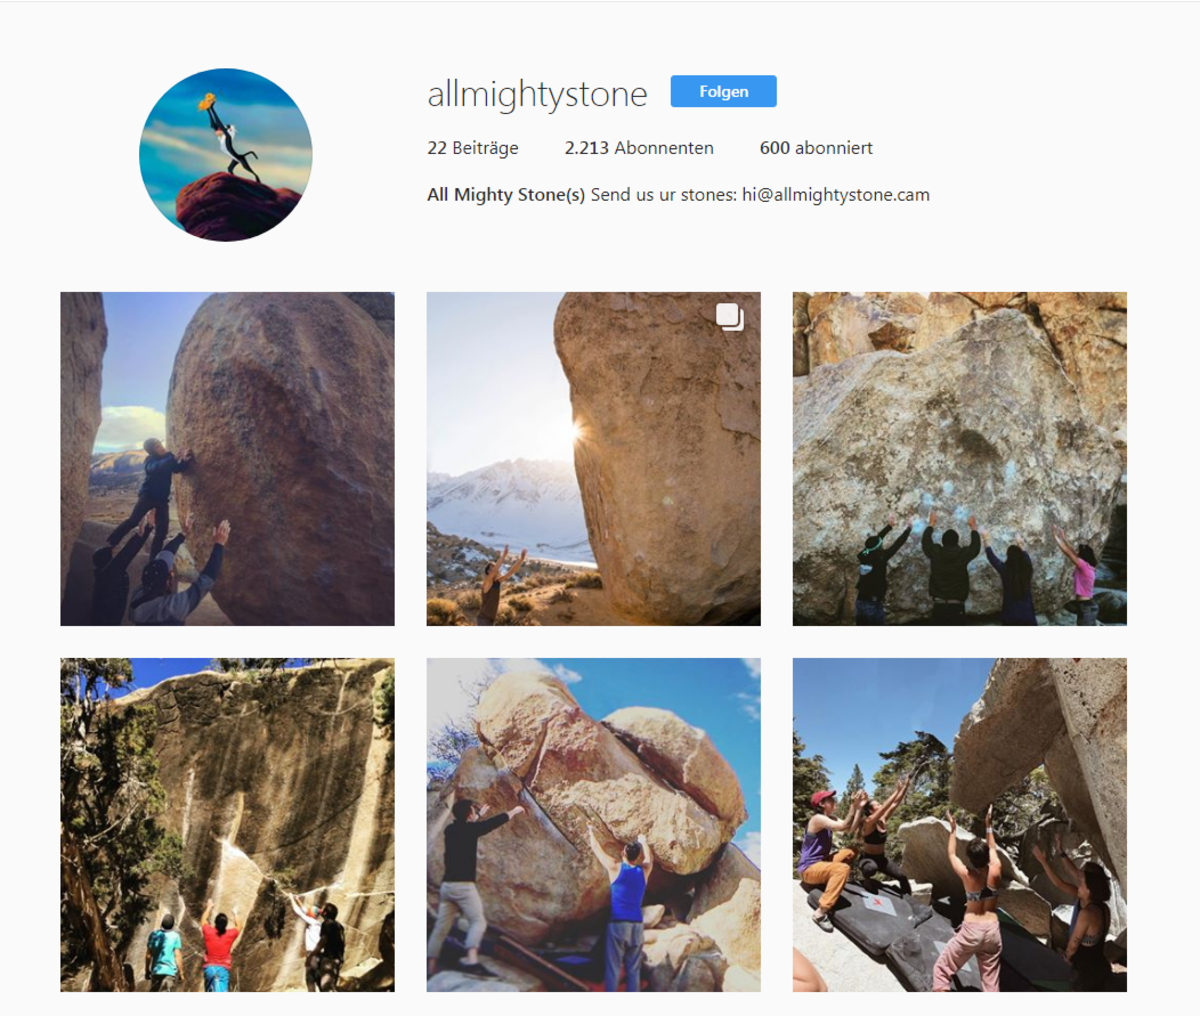 Das ist die Startseite des Instagram Accounts von Allmightystone